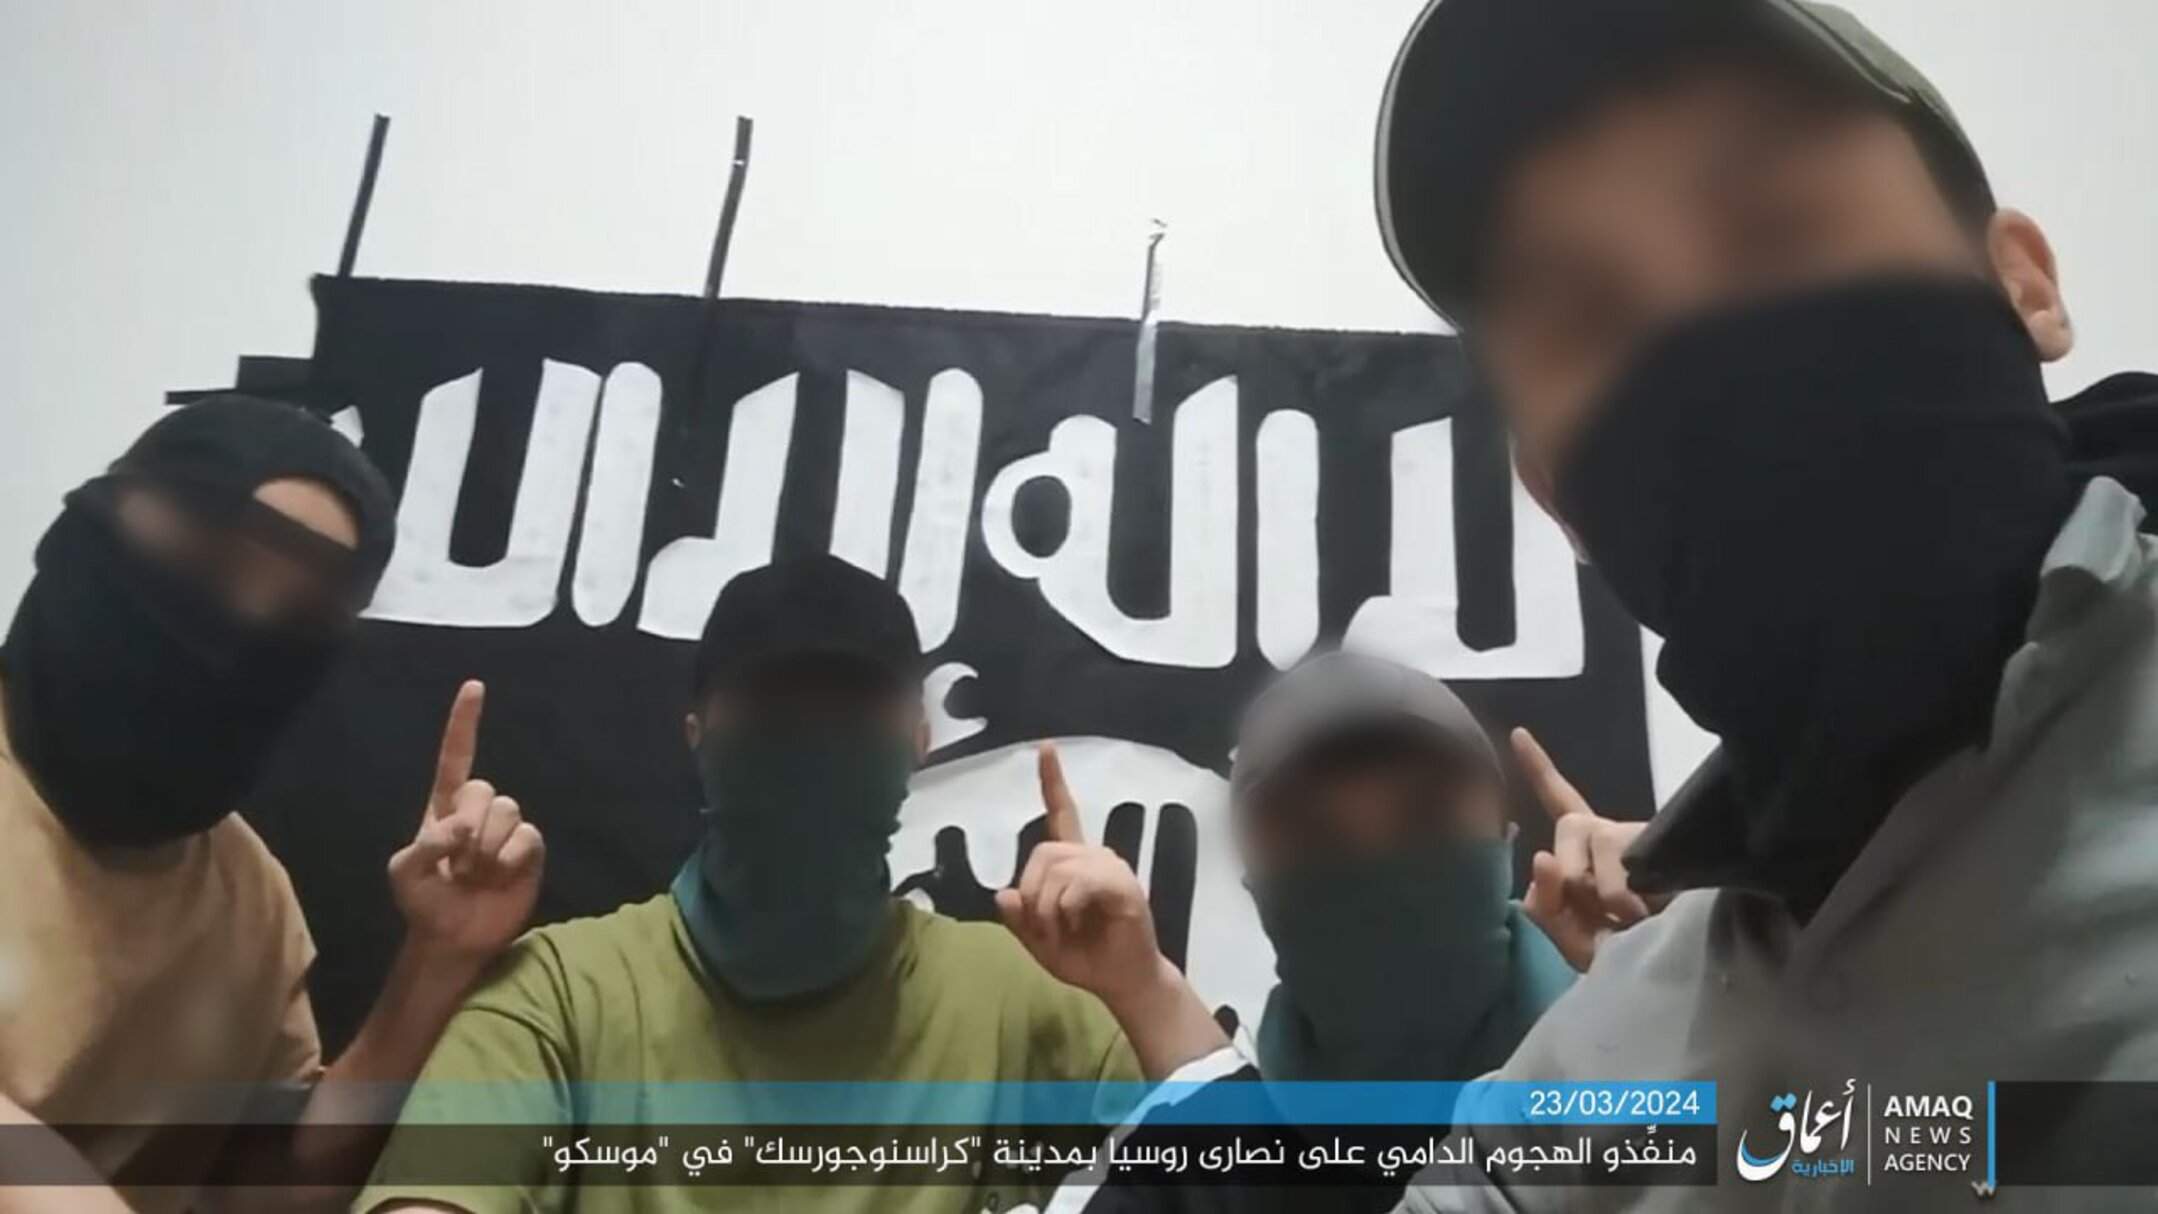 El Estado Islámico publica una fotografía de los presuntos cuatro autores del ataque en Moscú